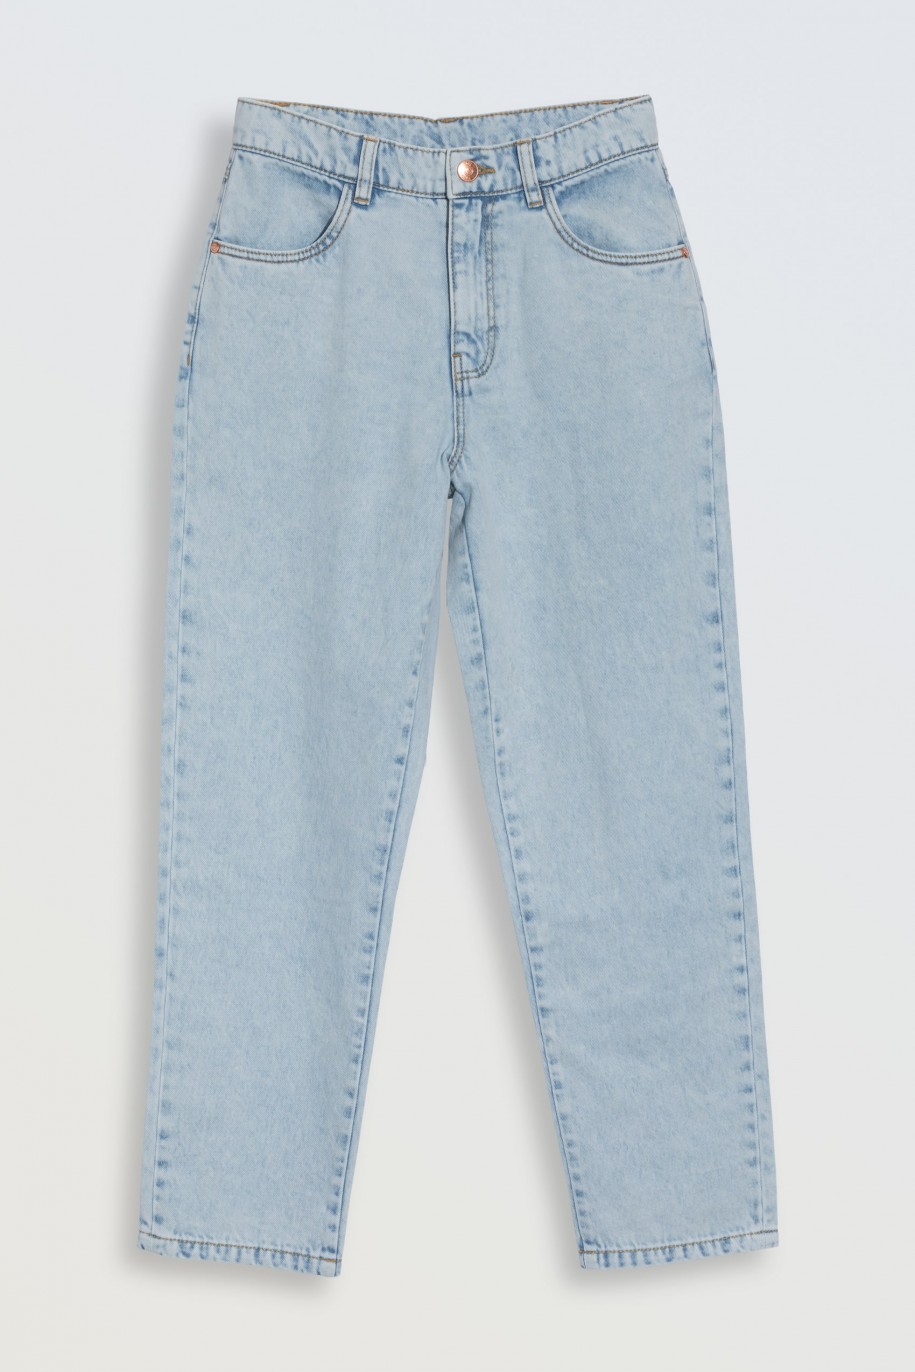 Jasnoniebieskie spodnie jeansowe typu MOM FIT - 46562